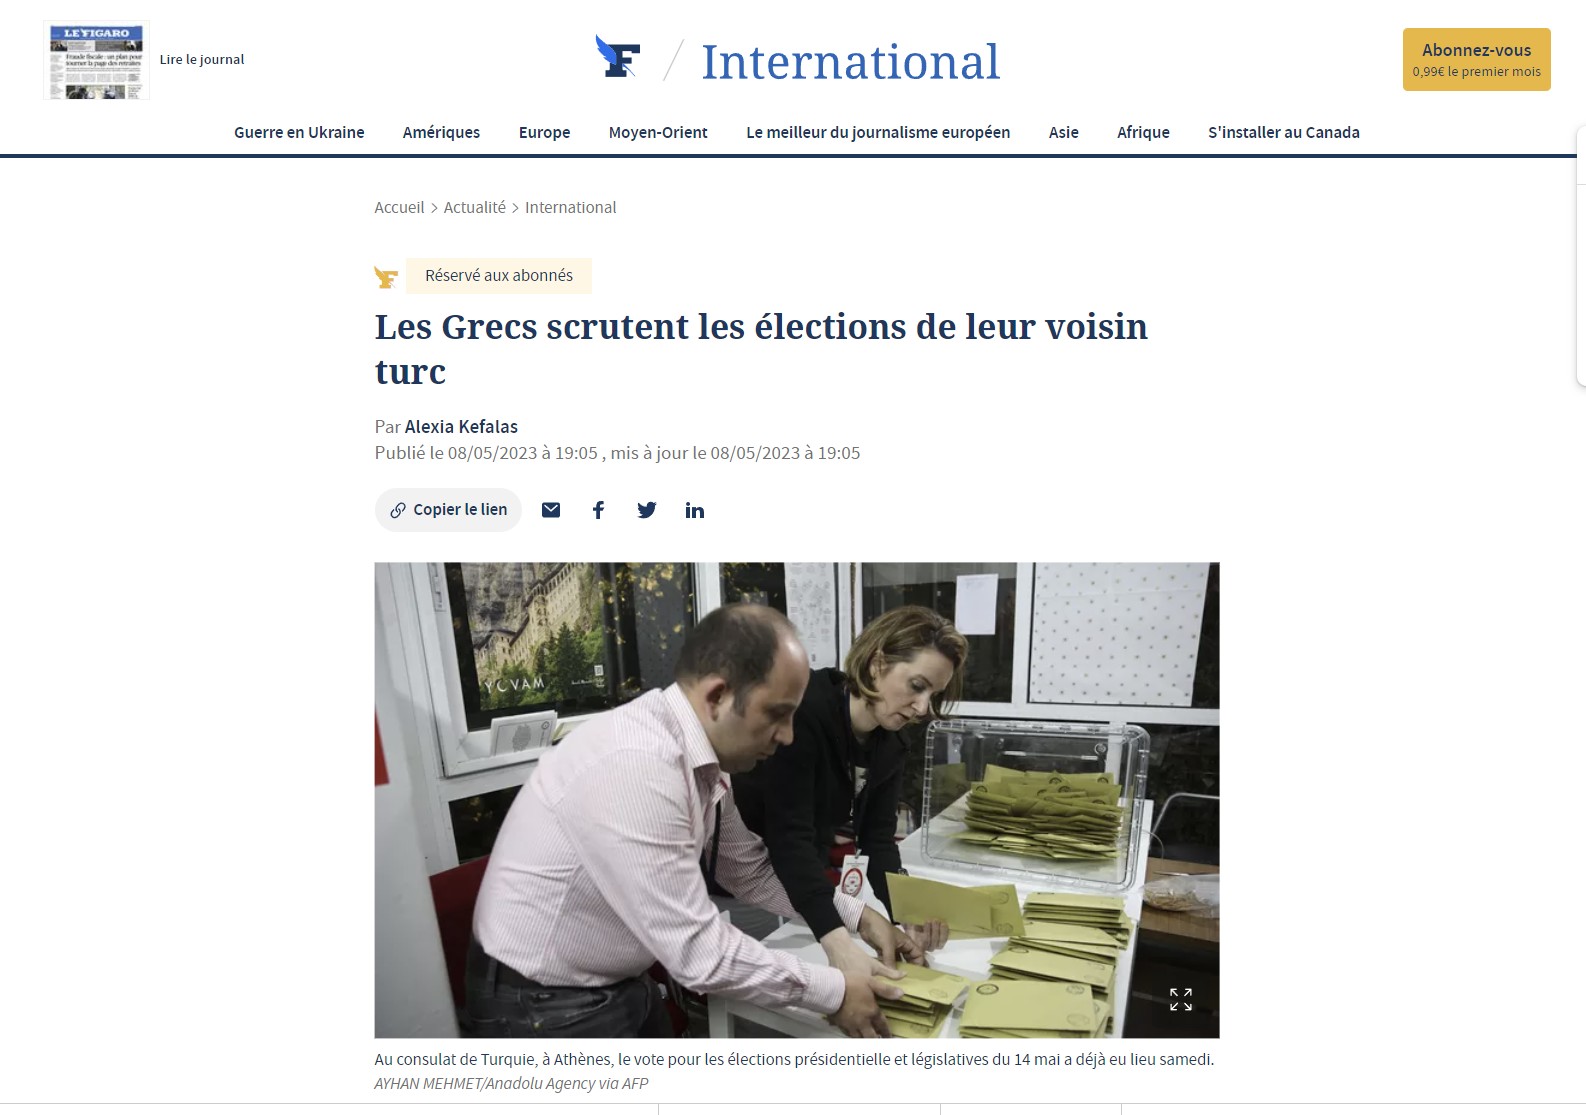 Le Figaro: Οι Έλληνες εξετάζουν εξονυχιστικά τις εκλογές του Τούρκου γείτονά τους! Τί δηλώνουν στη γαλλική εφημερίδα Σία Κοσιώνη, Ράνια Τζίμα για το ενδιαφέρον γύρω από τη διαδικασία;